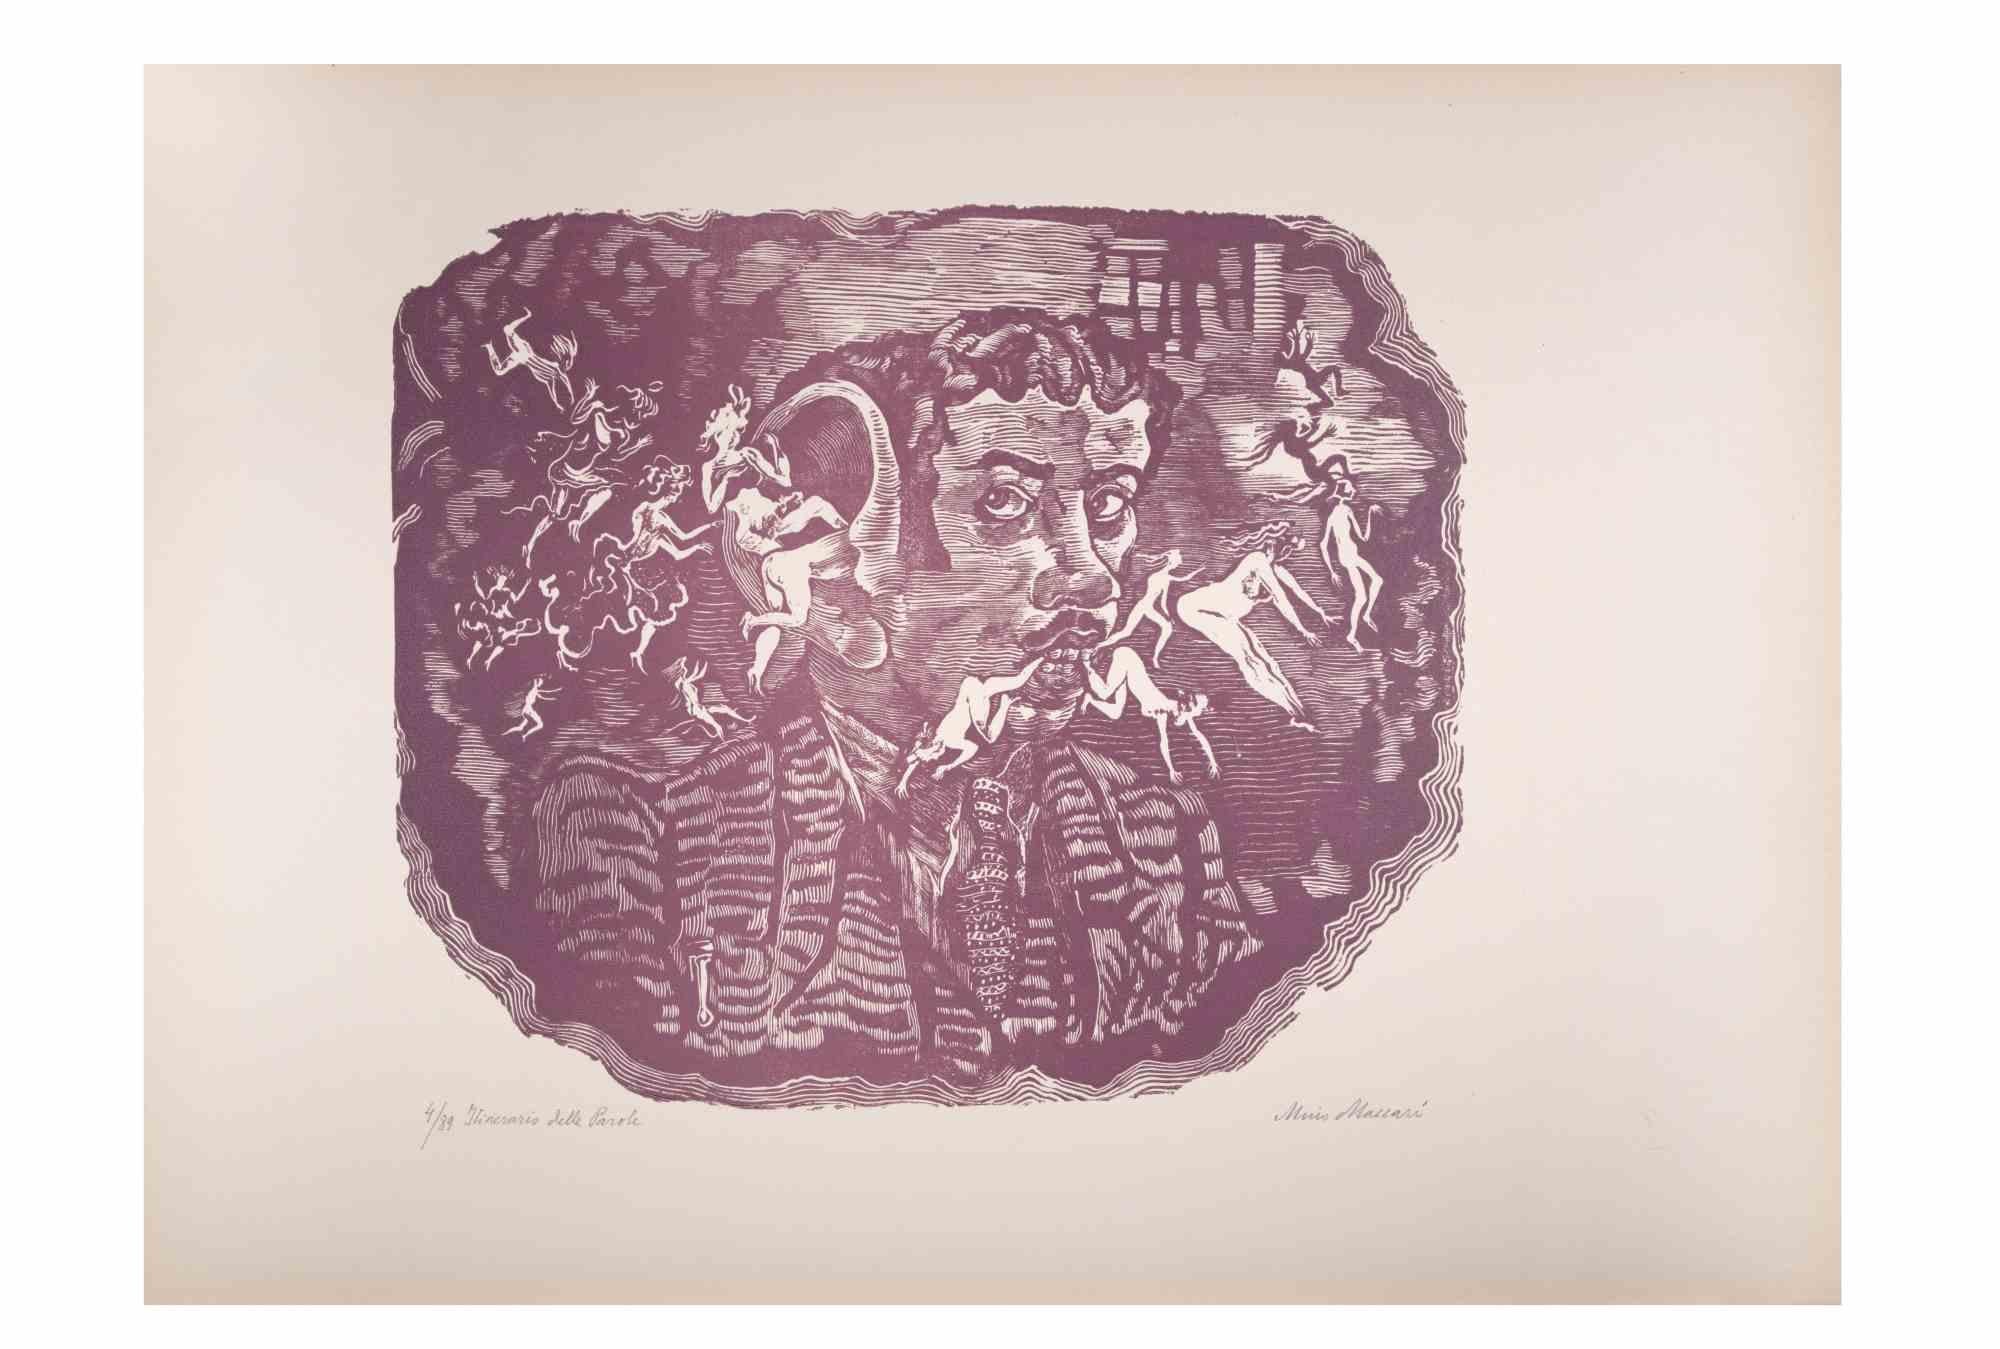 Word itineray ist ein Kunstwerk von Mino Maccari (1924-1989) aus der Mitte des 20. Jahrhunderts.

Farbiger Holzschnitt auf Papier. Unten handsigniert, nummeriert 4/89 Exemplare und am linken Rand betitelt.

Gute Bedingungen.

Mino Maccari (Siena,